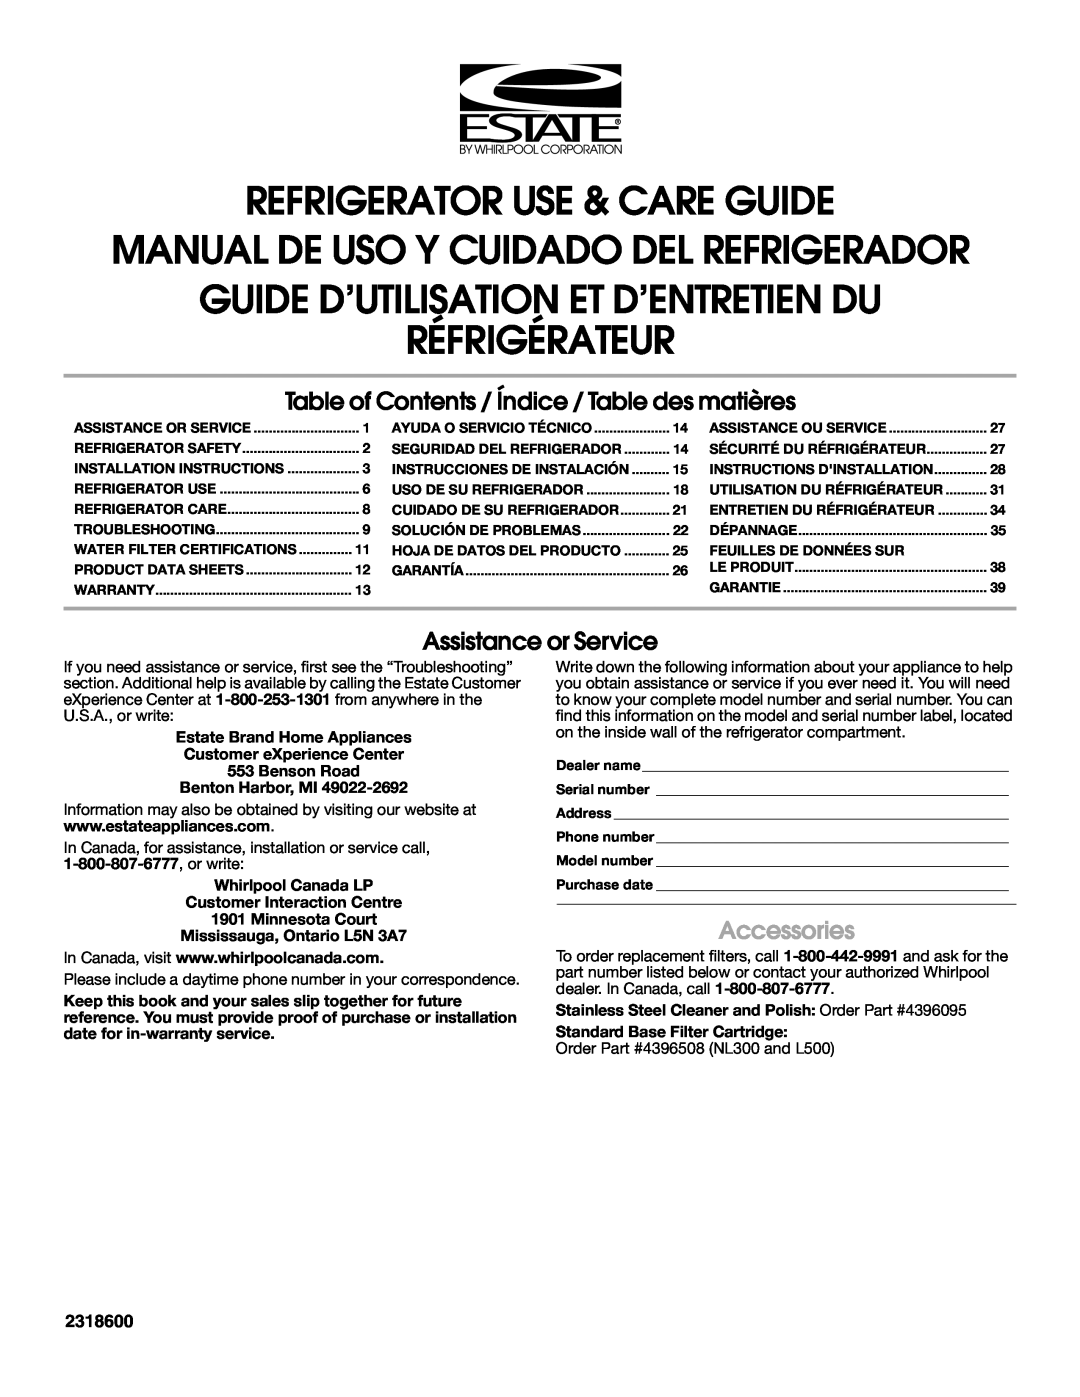 Estate 2318600 warranty Refrigerator Use & Care Guide, Manual De Uso Y Cuidado Del Refrigerador, Réfrigérateur 